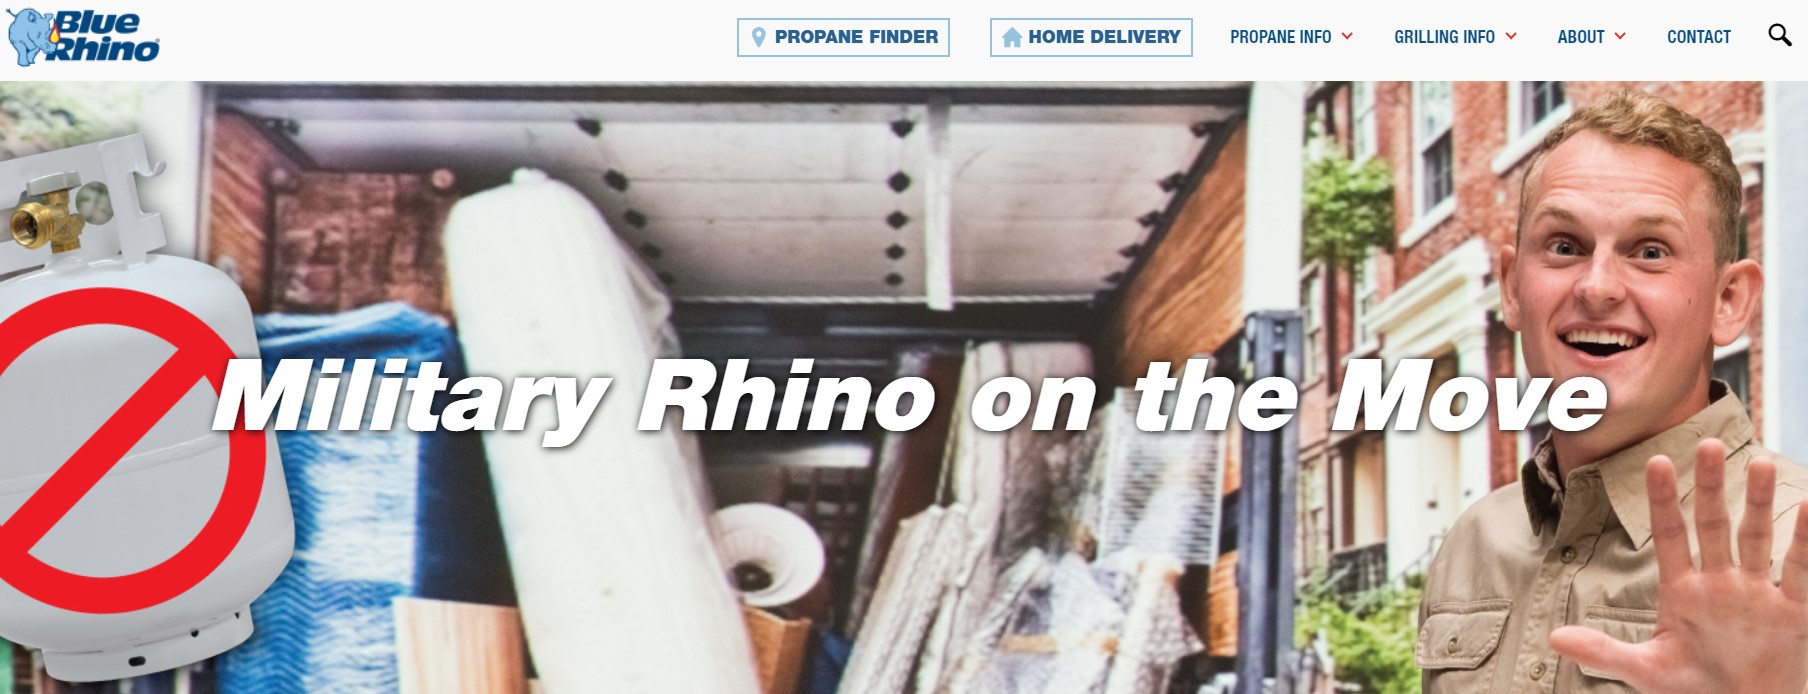 Printable Blue Rhino Rebate Form